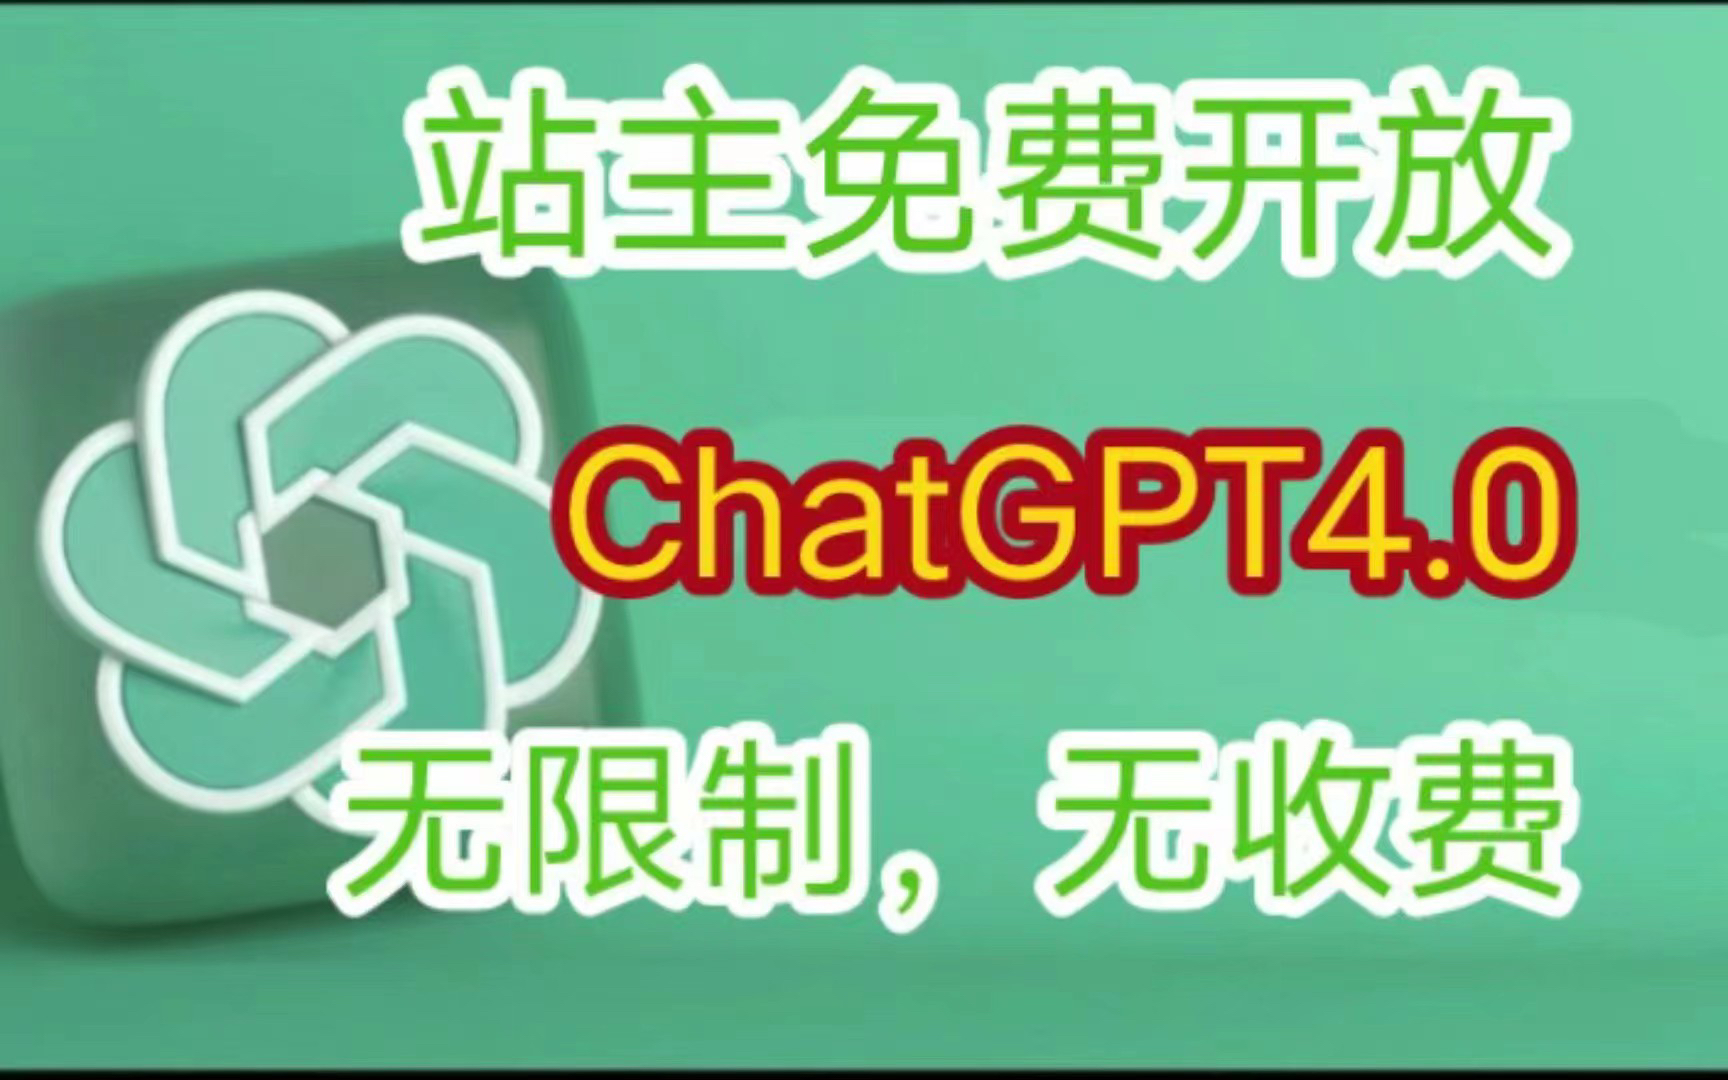 【免费 无需登录 直接可以用的 chatgpt】GPT4.0免费使用教程来了